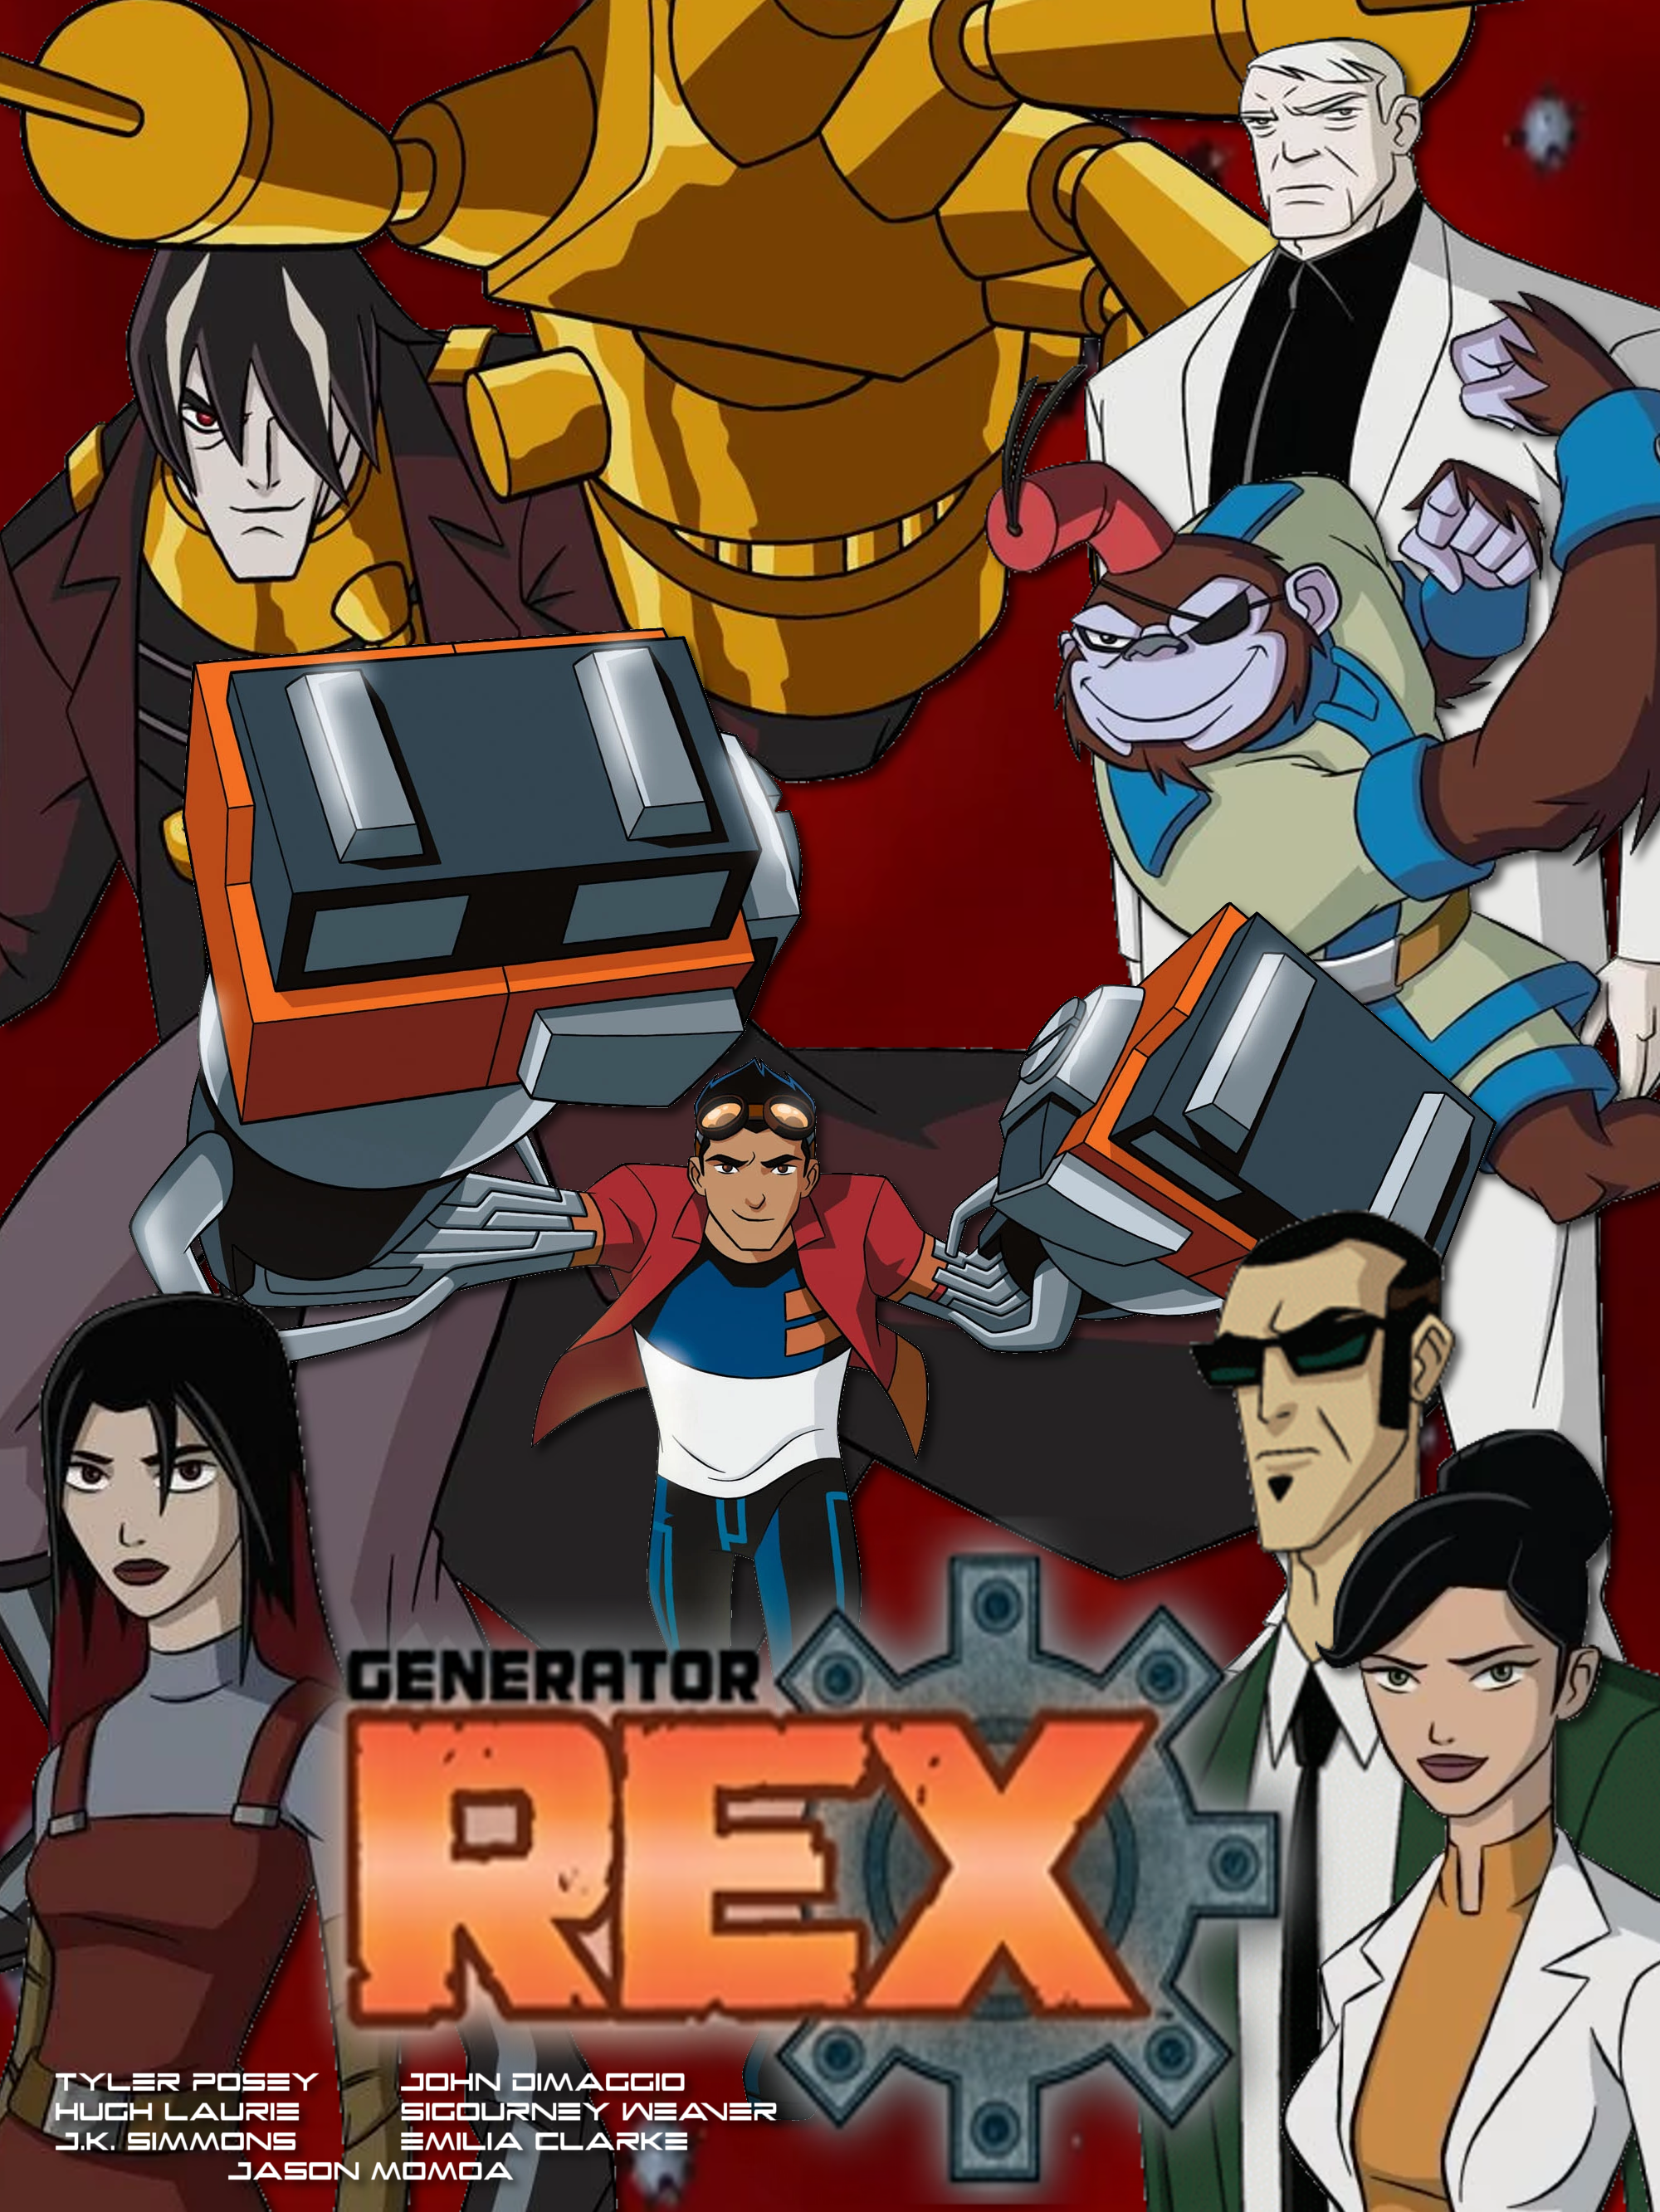 Image of generator rex